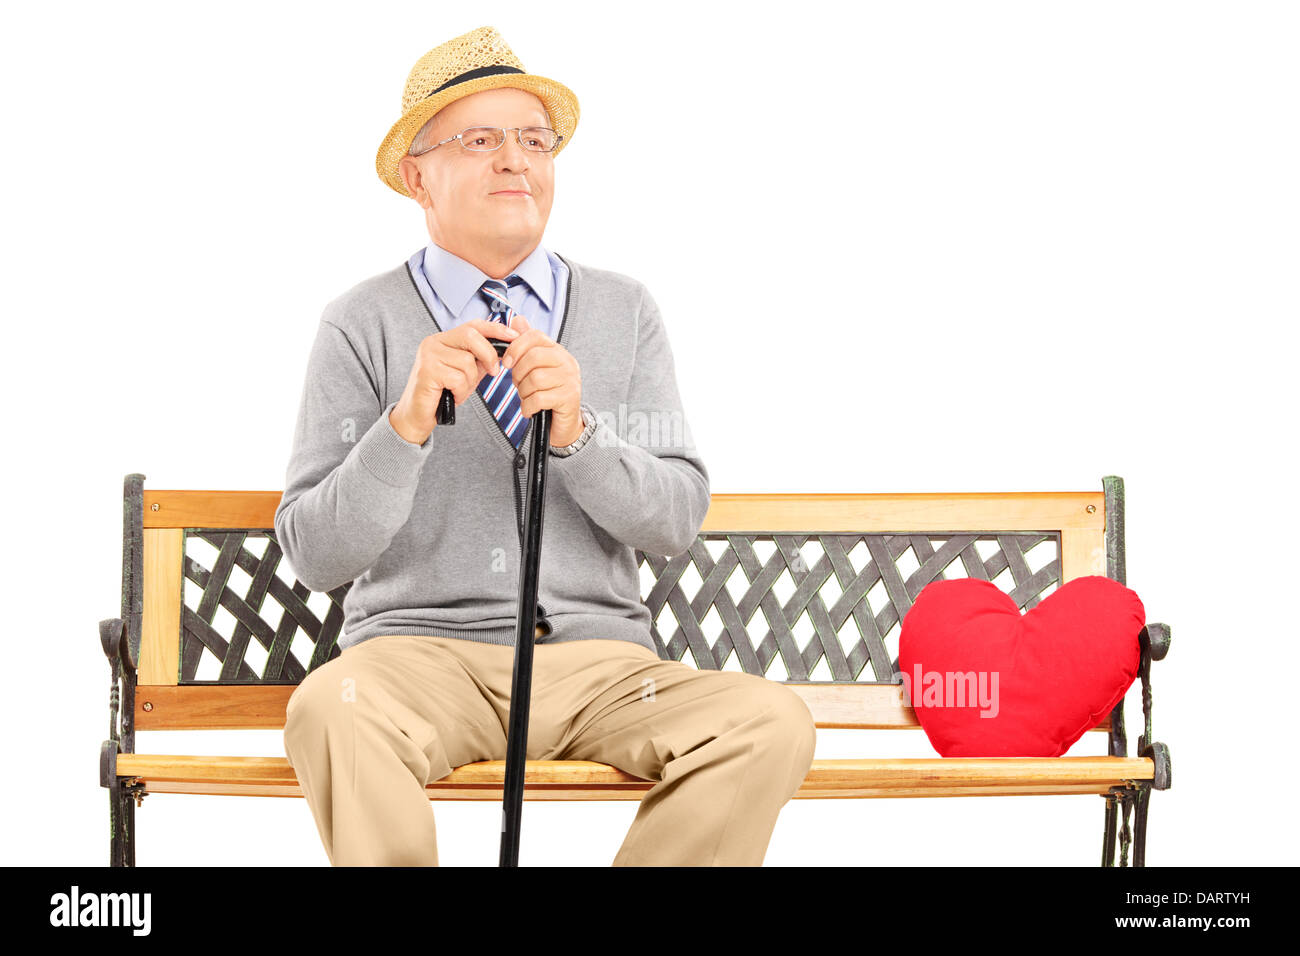 Hauts homme assis sur un banc en bois avec coeur rouge à côté de lui Banque D'Images